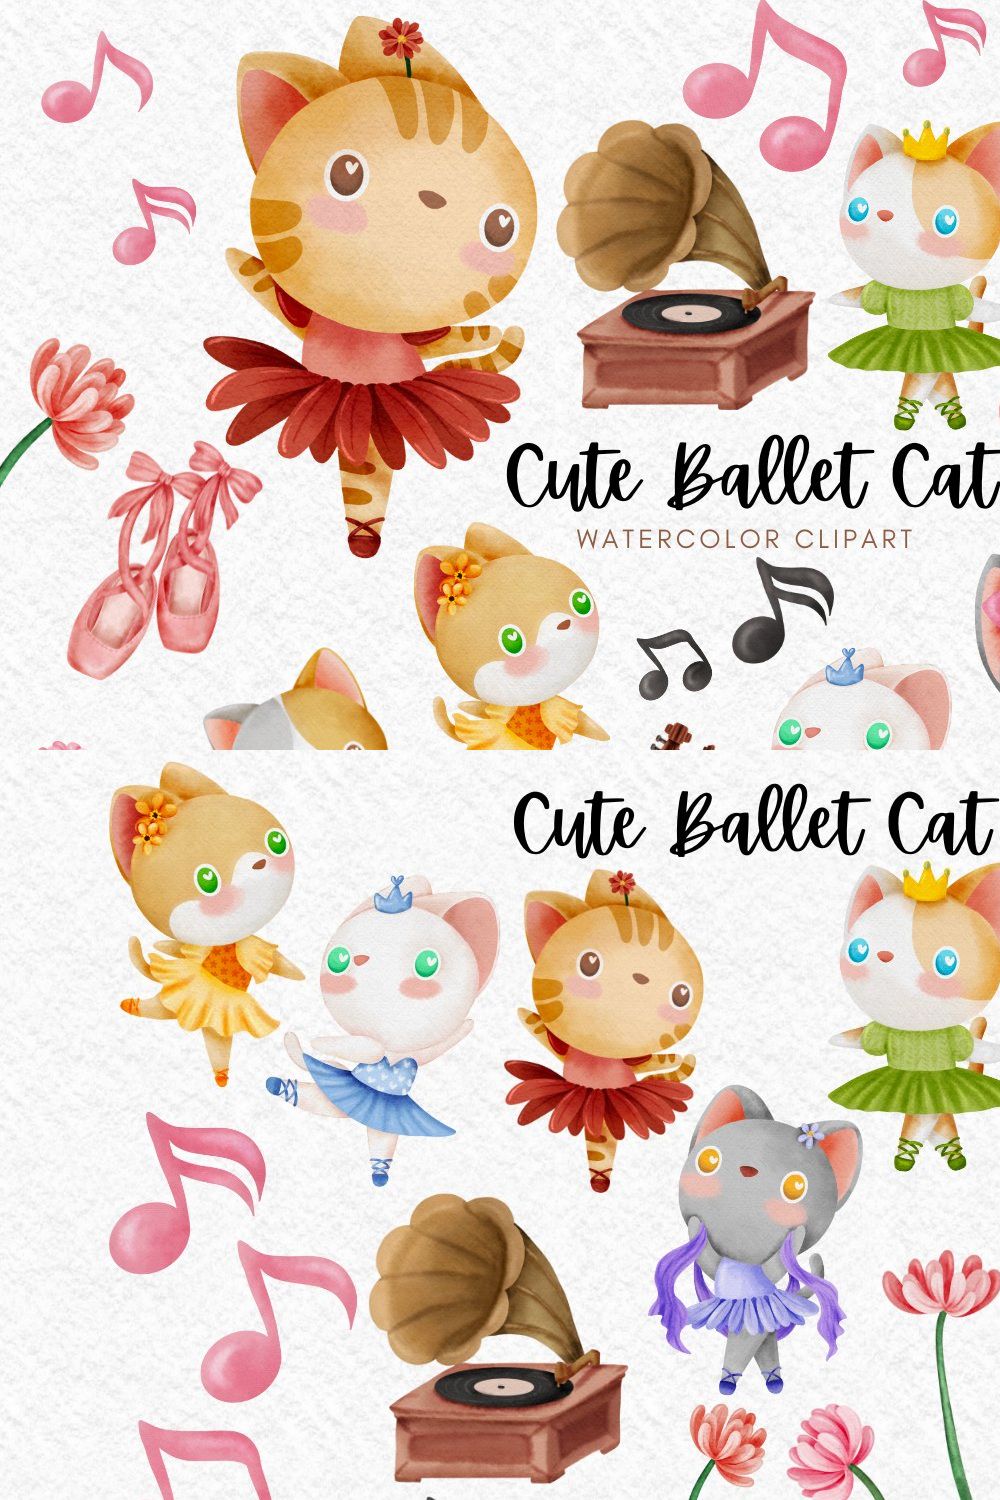 Cute Ballet Cat watercolor clipart pinterest preview image.